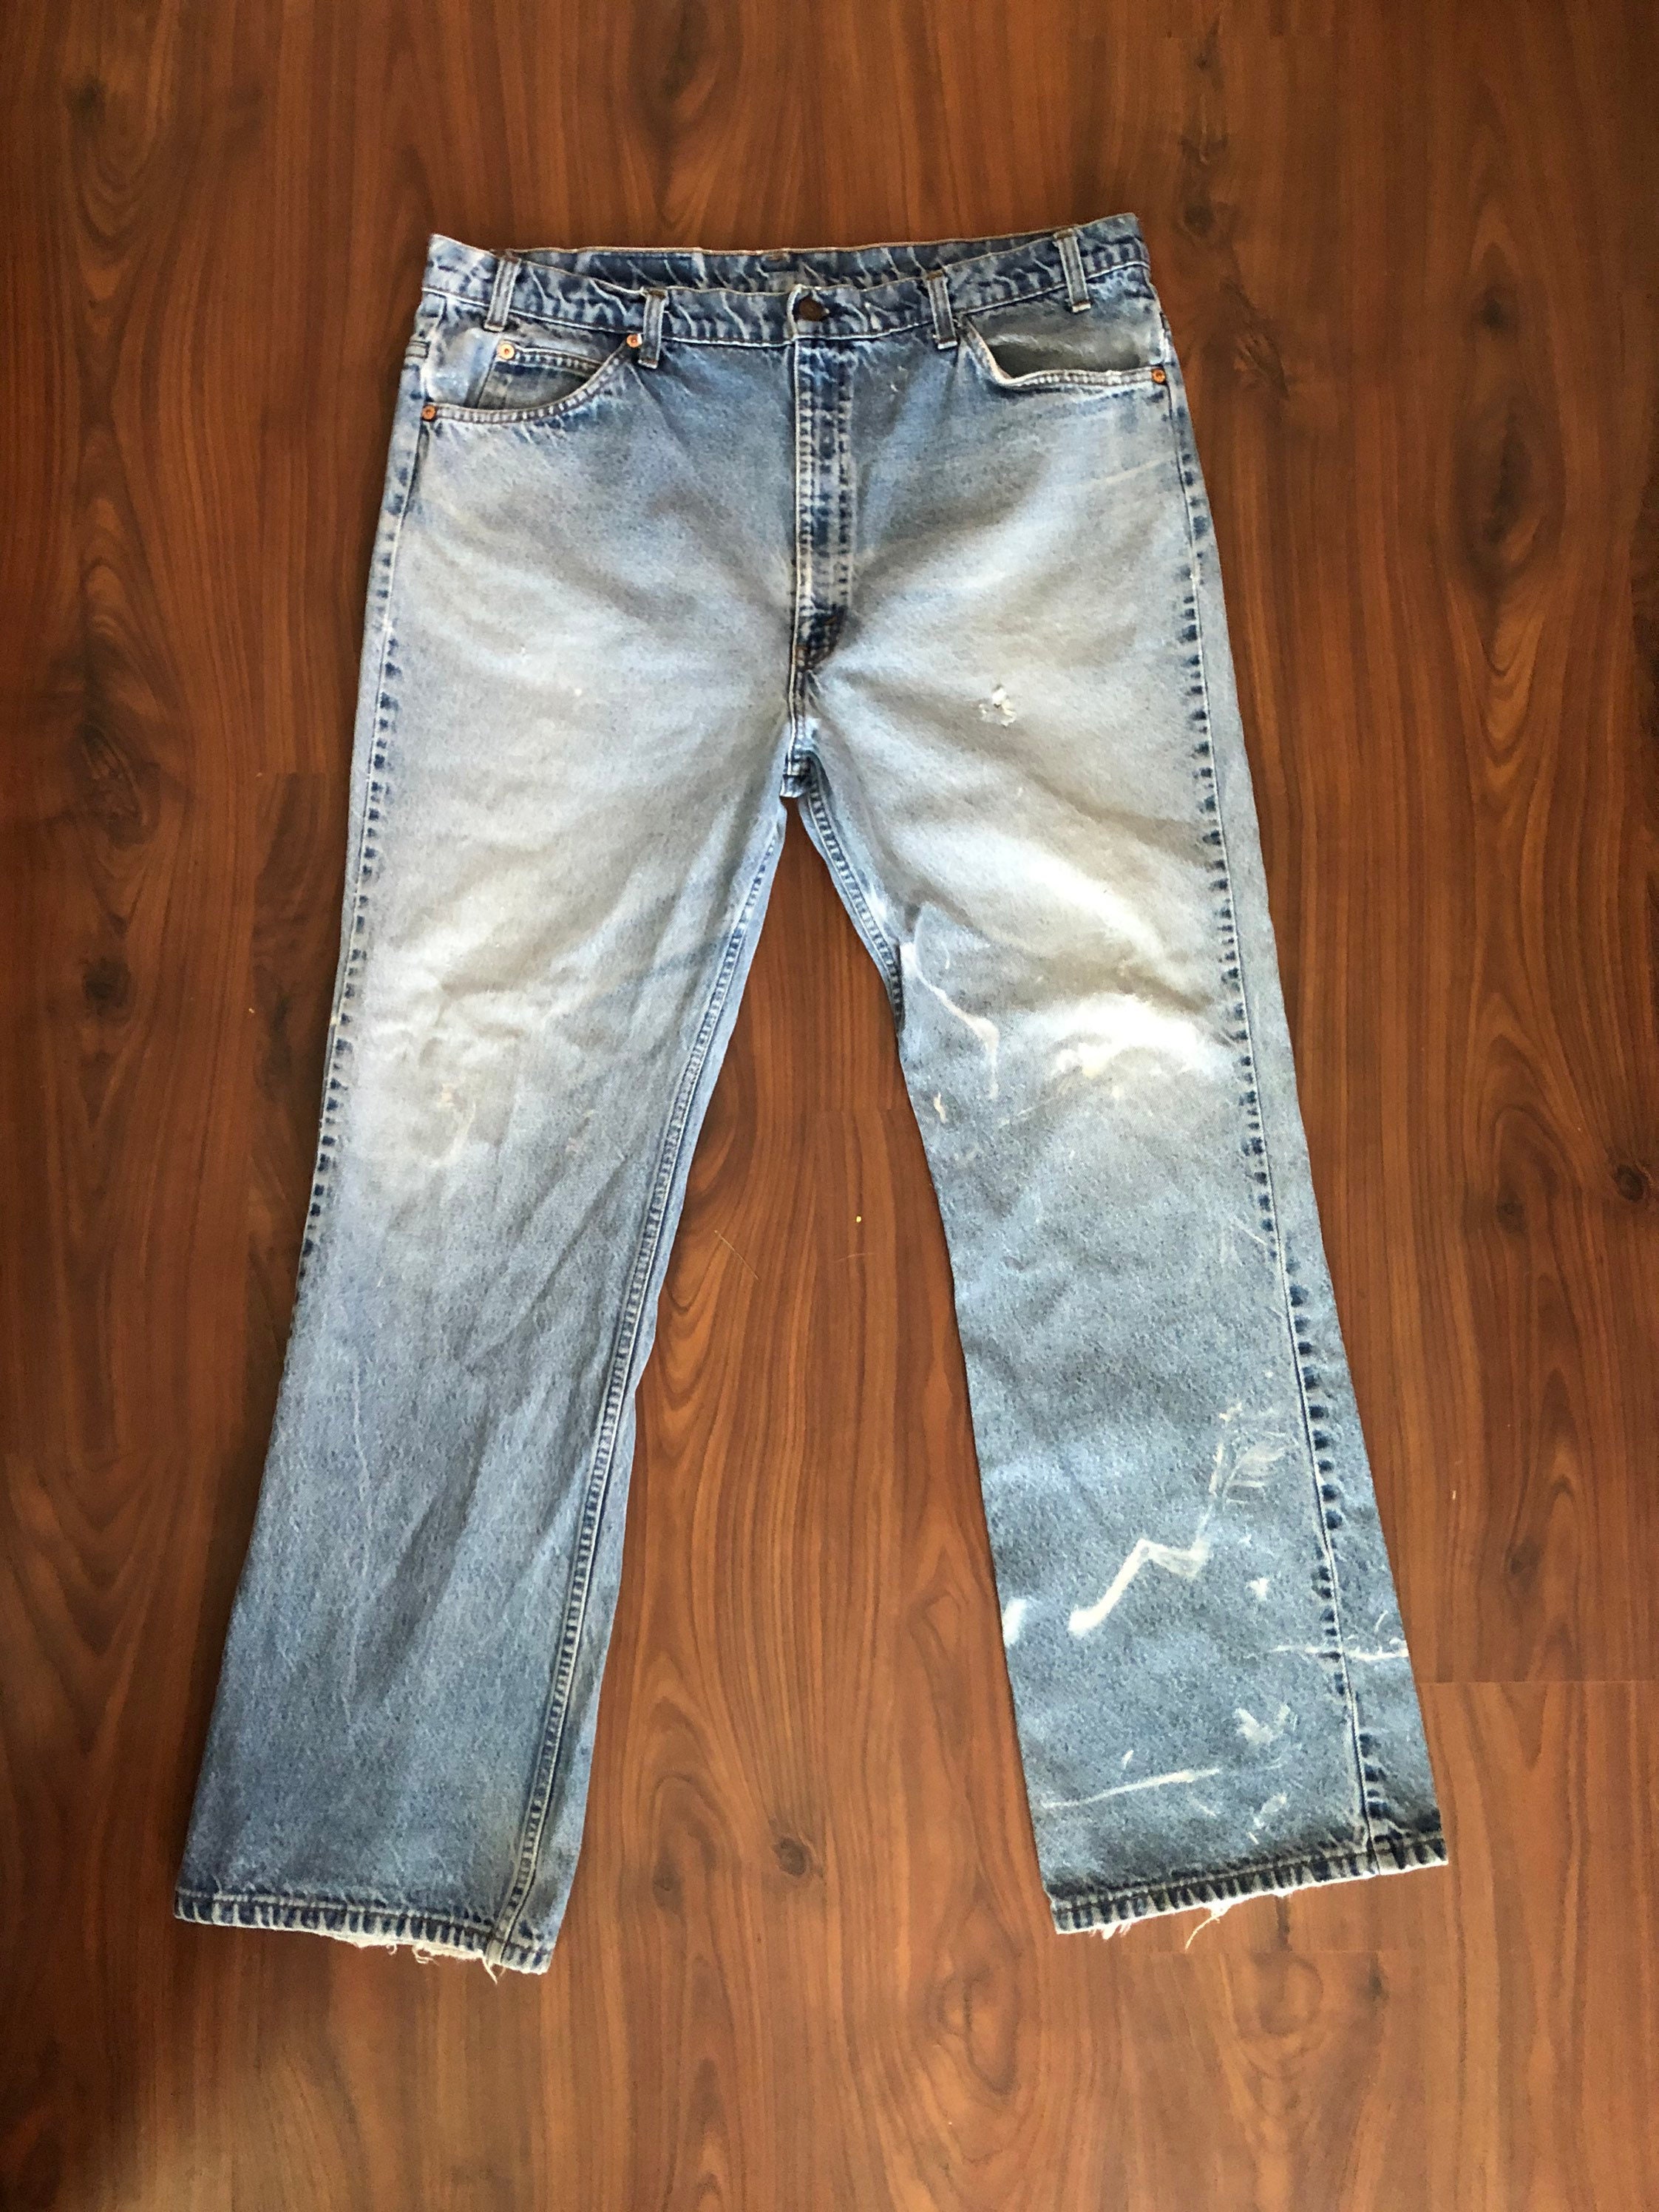 Vintage 80s Levis 517 orange tab jeans size 42W 32L runs a bit | Etsy